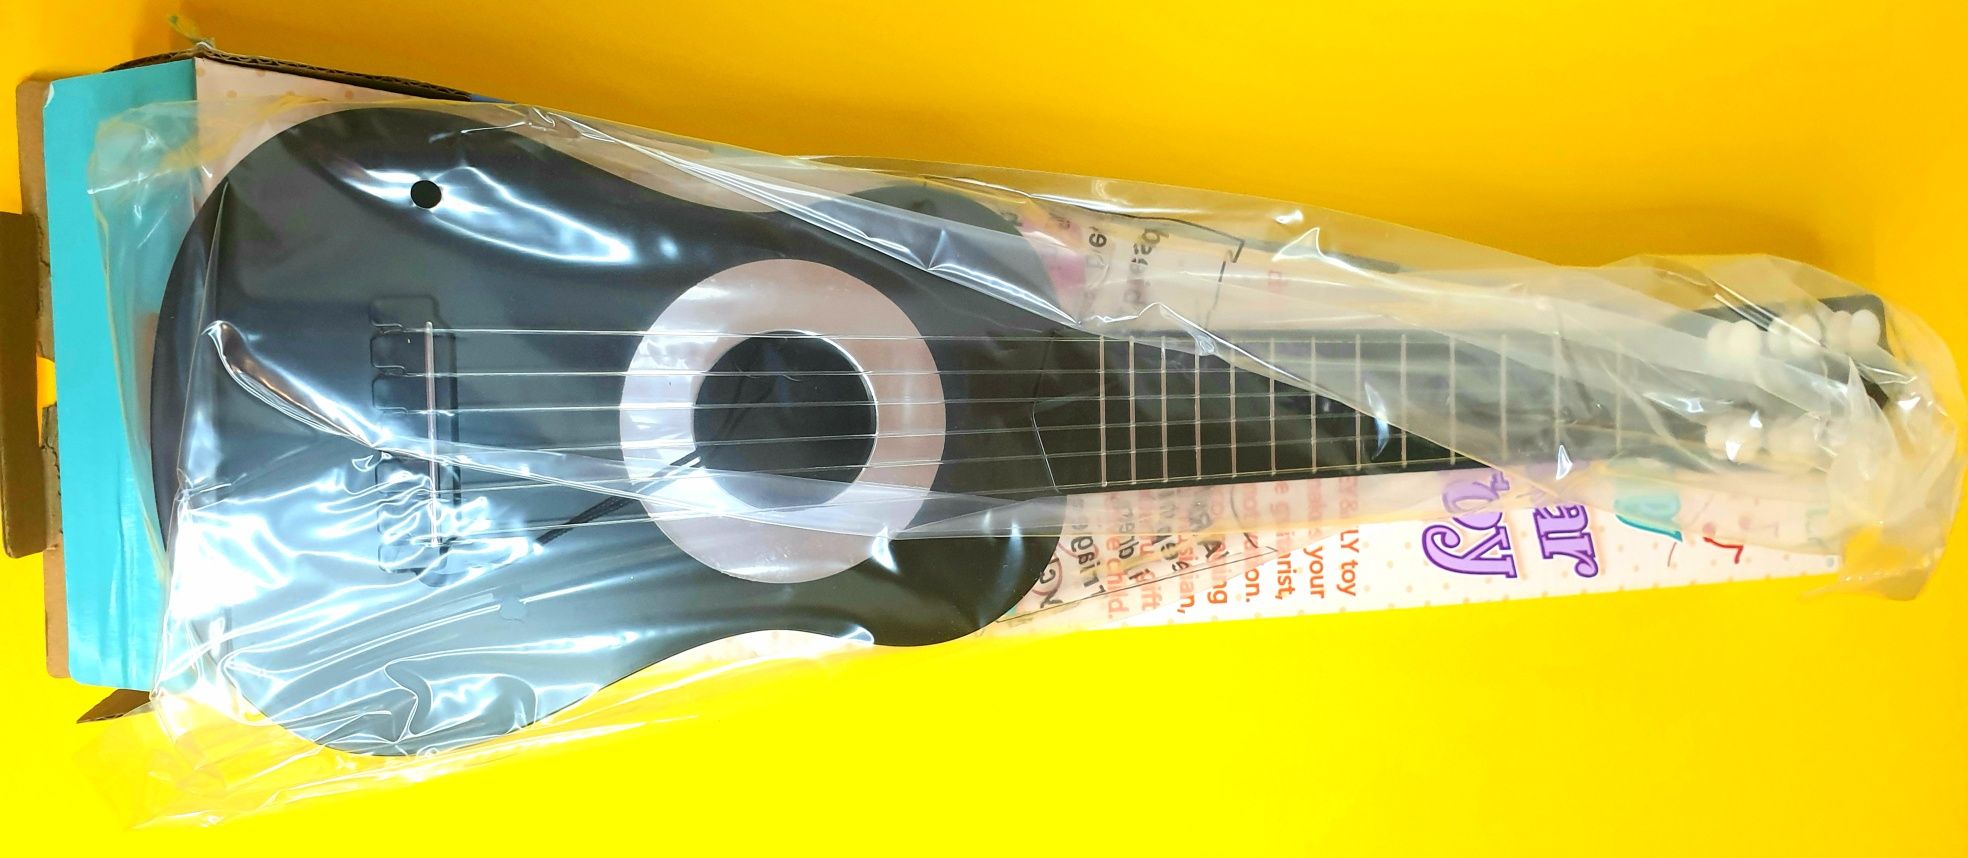 Gitara nowa Czarna fabrycznie zapakowana 44 cm